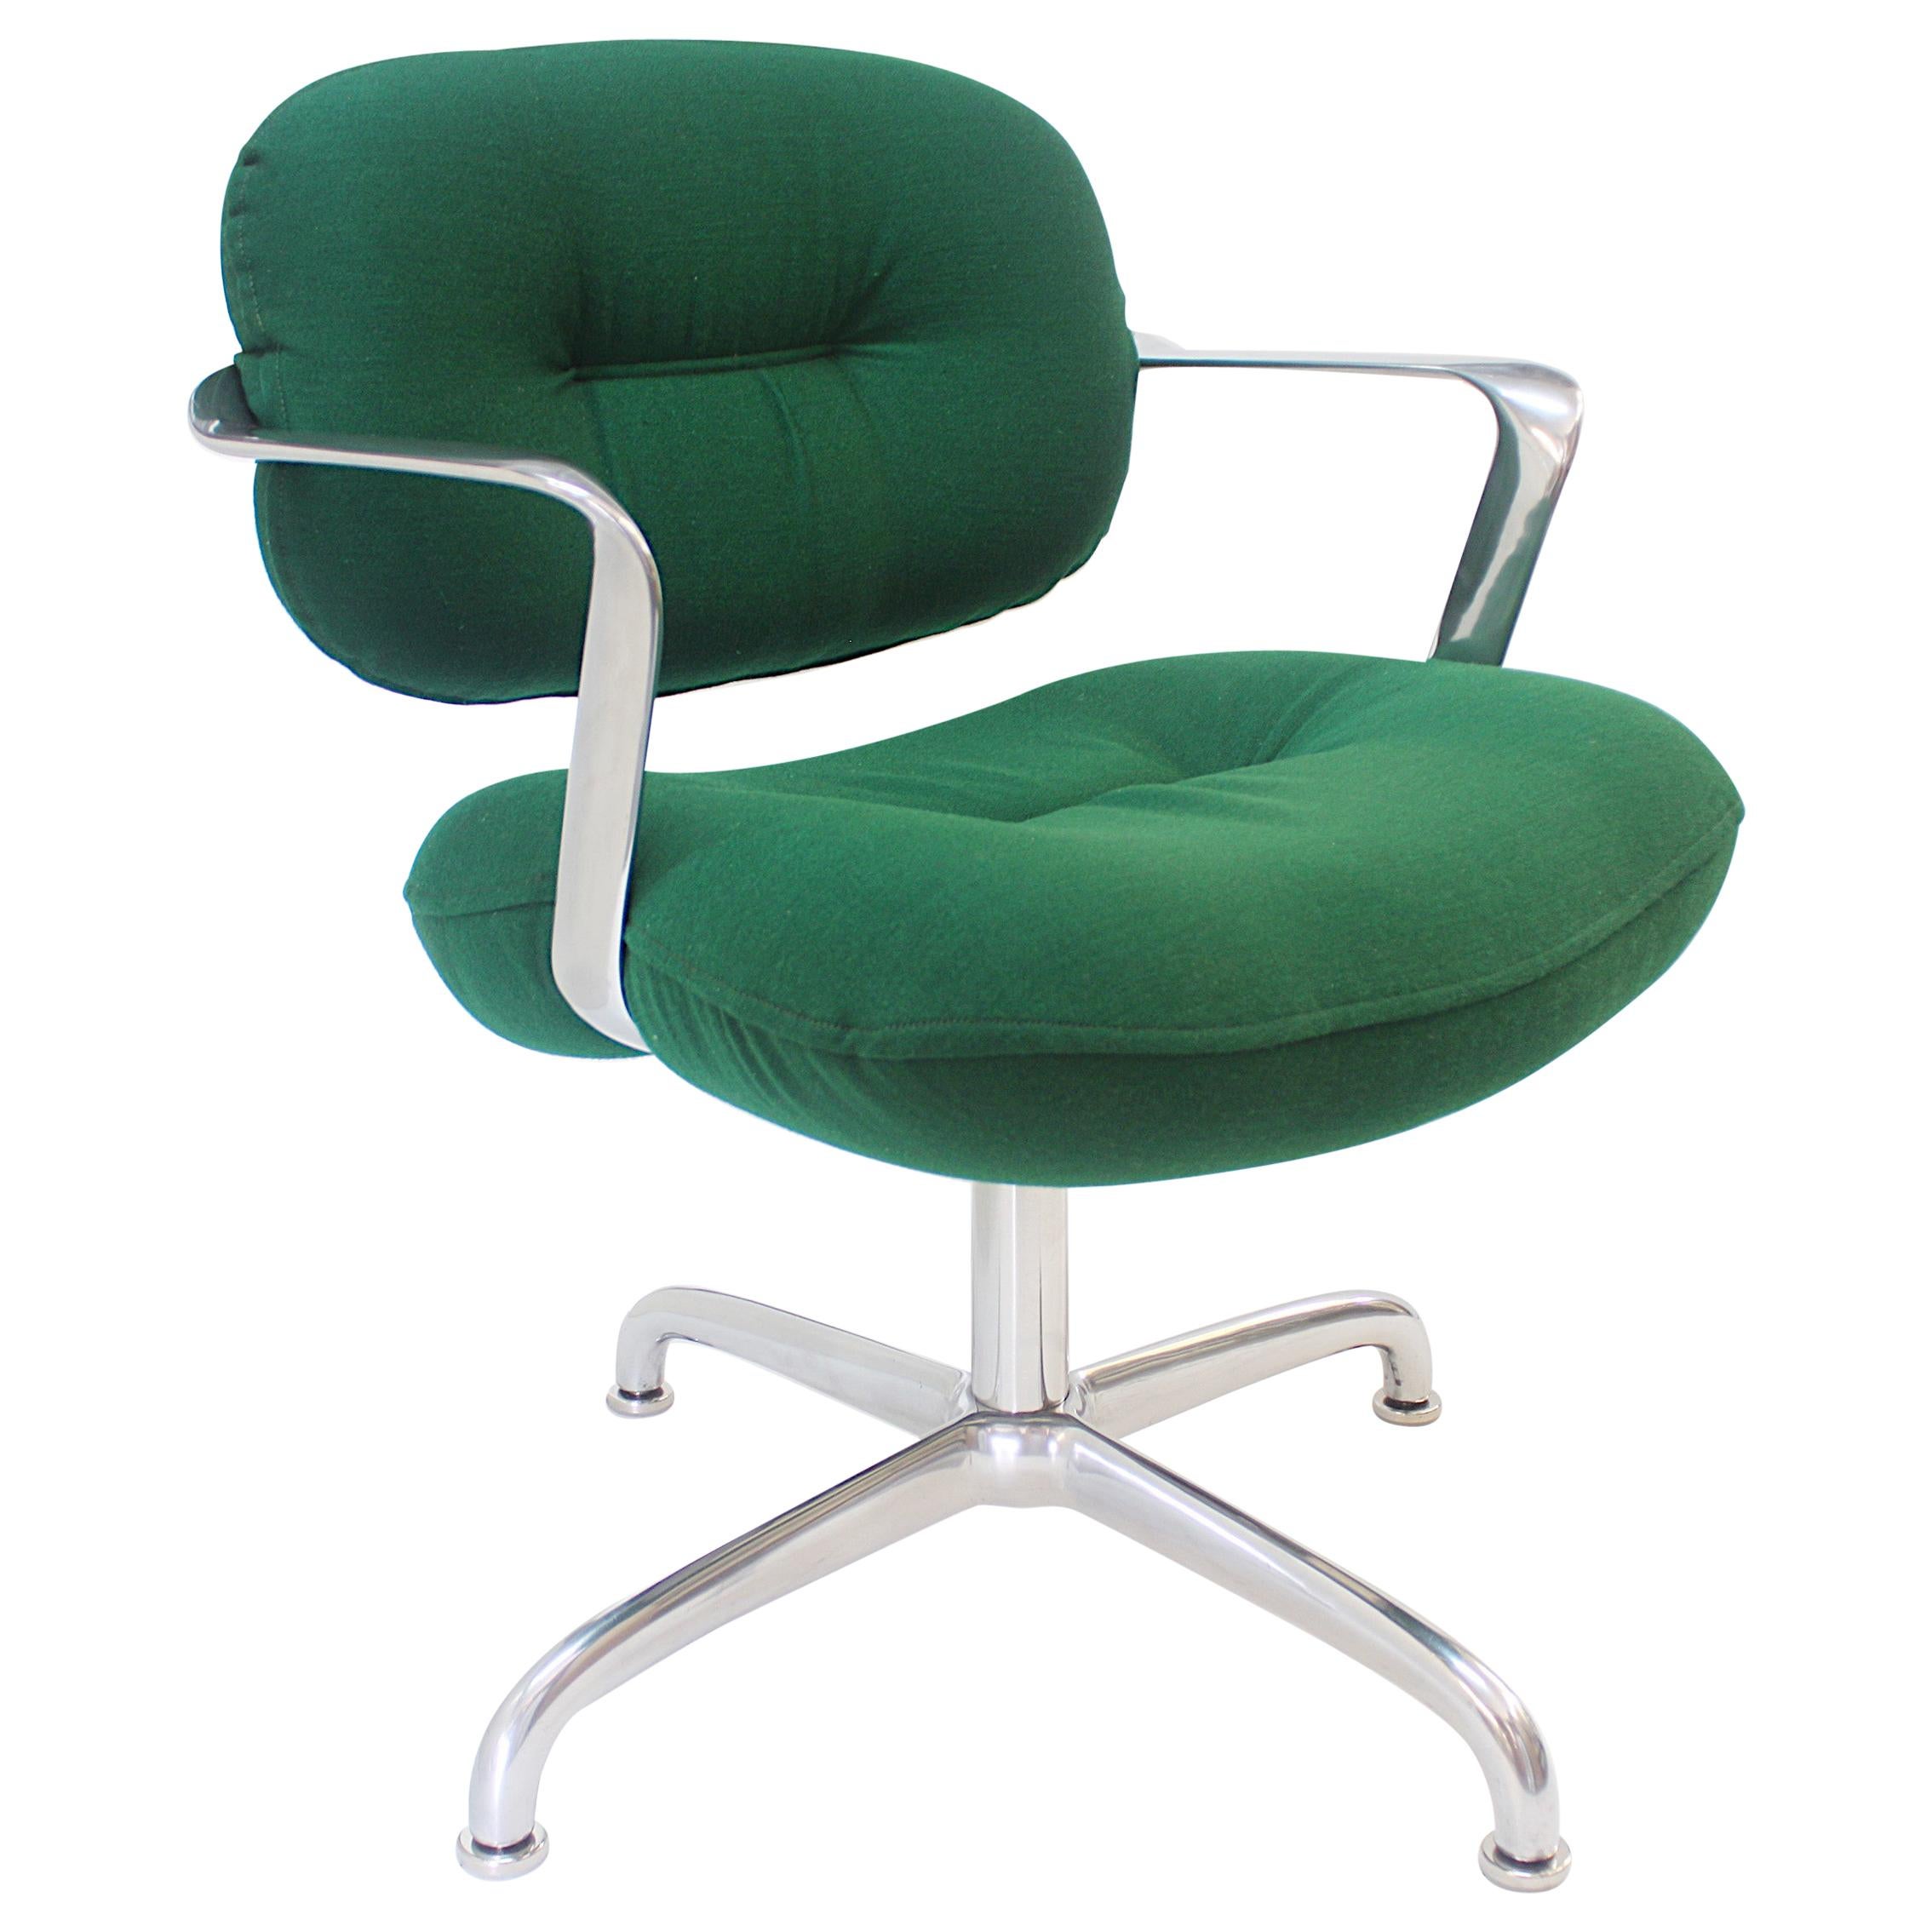 1970s Pop Art Kelly Green Hand Chair